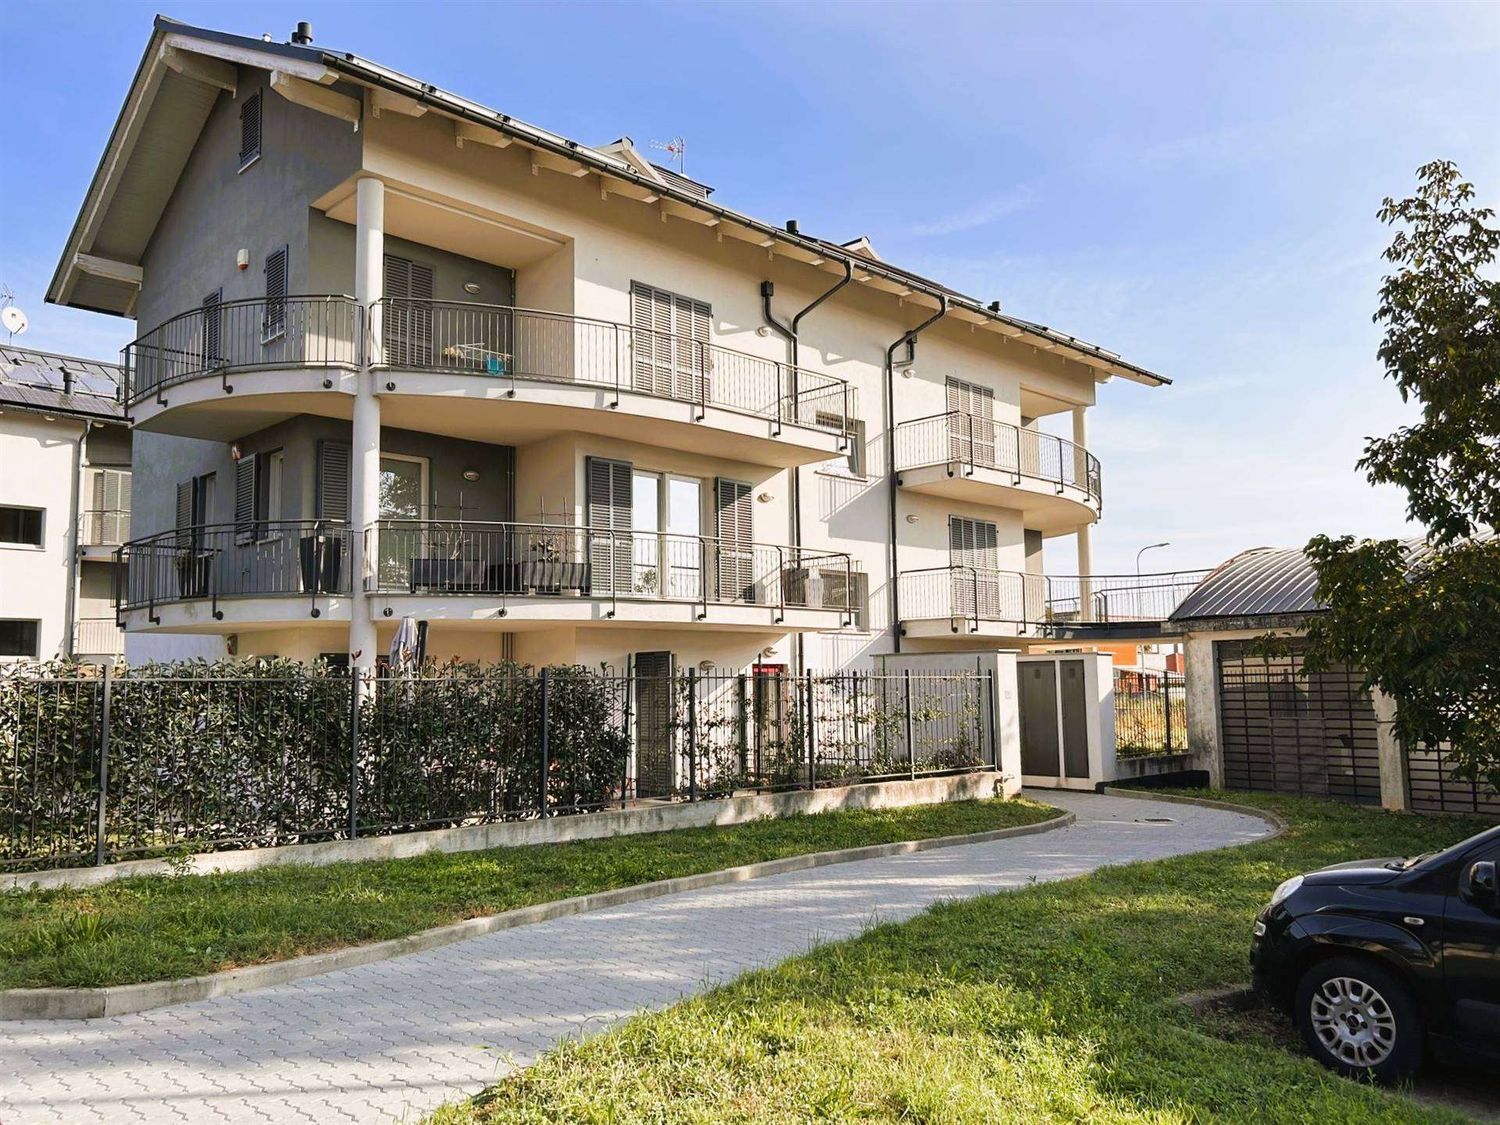 Duplex in vendita a Chieri, 4 locali, prezzo € 280.000 | PortaleAgenzieImmobiliari.it